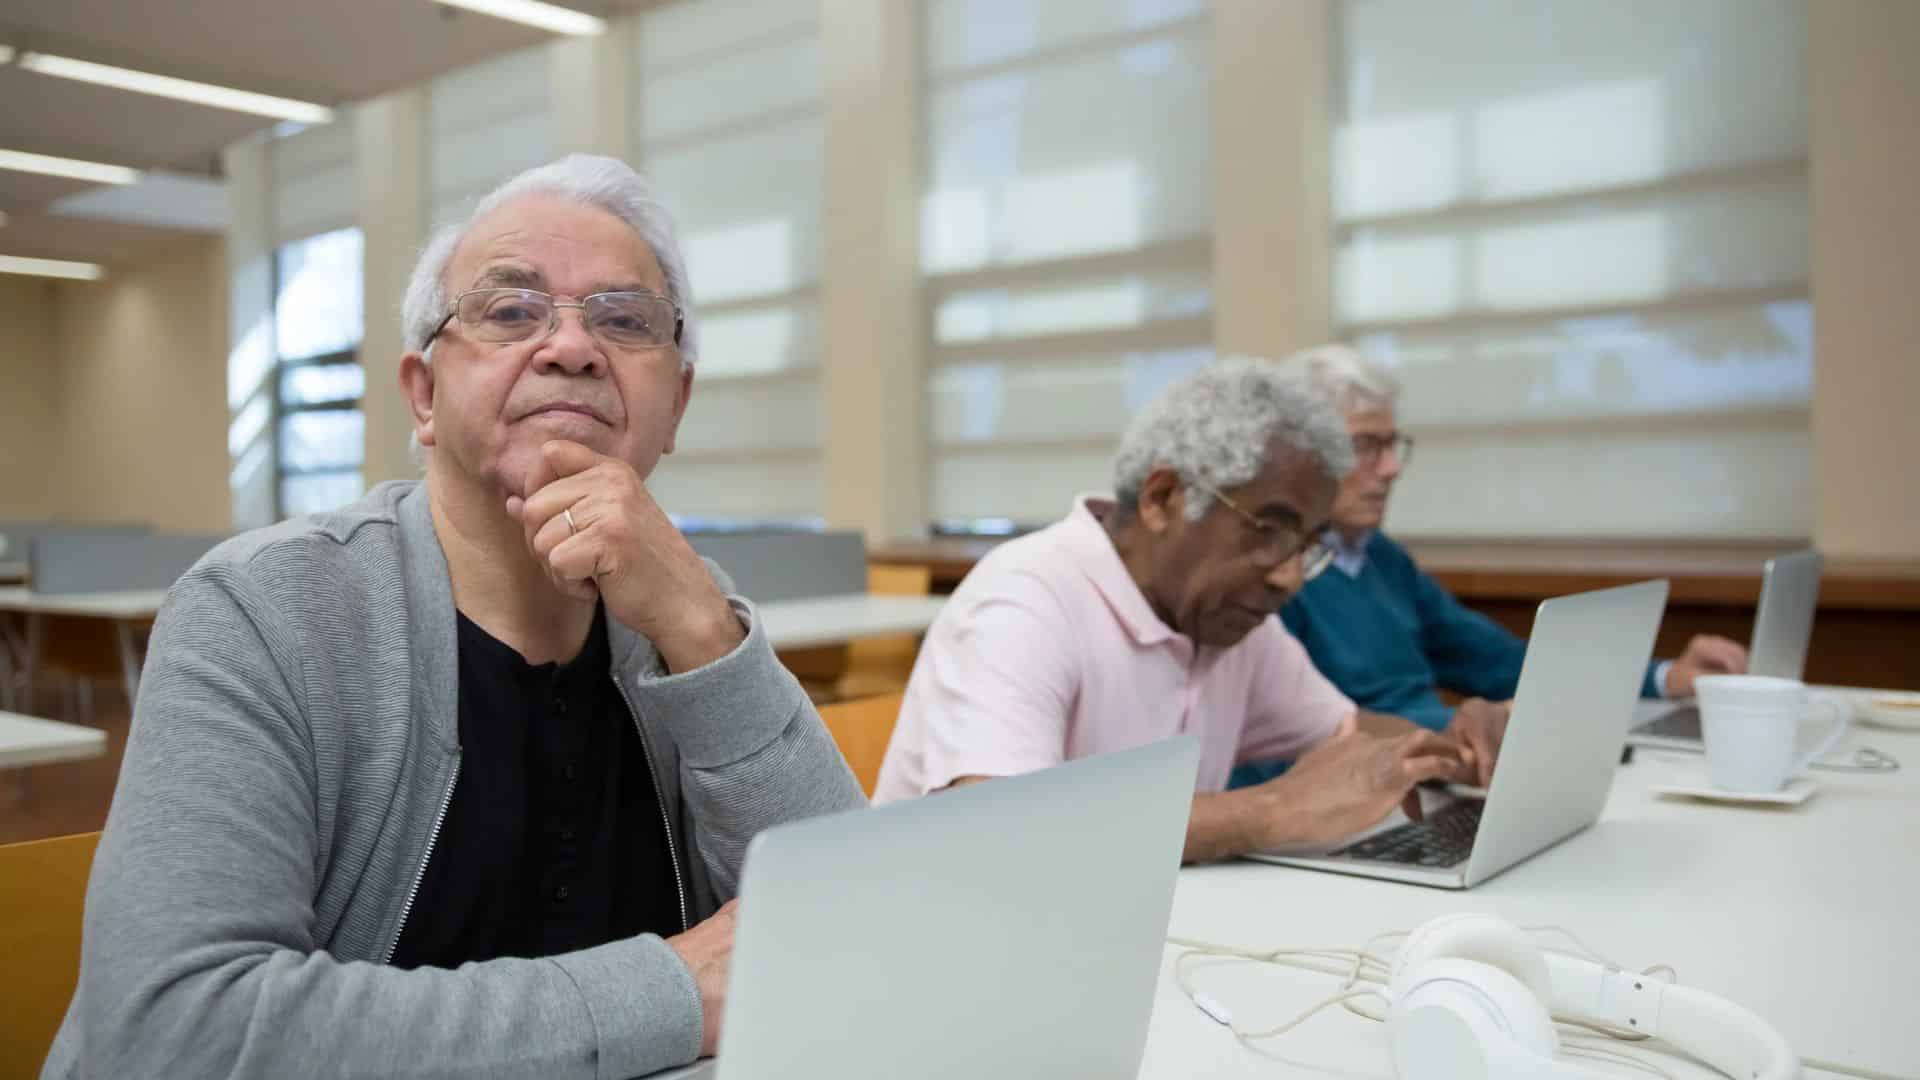 Hinzuverdienst zur Rente: Rentner haben mehr vom Leben - wenn sie arbeiten?!